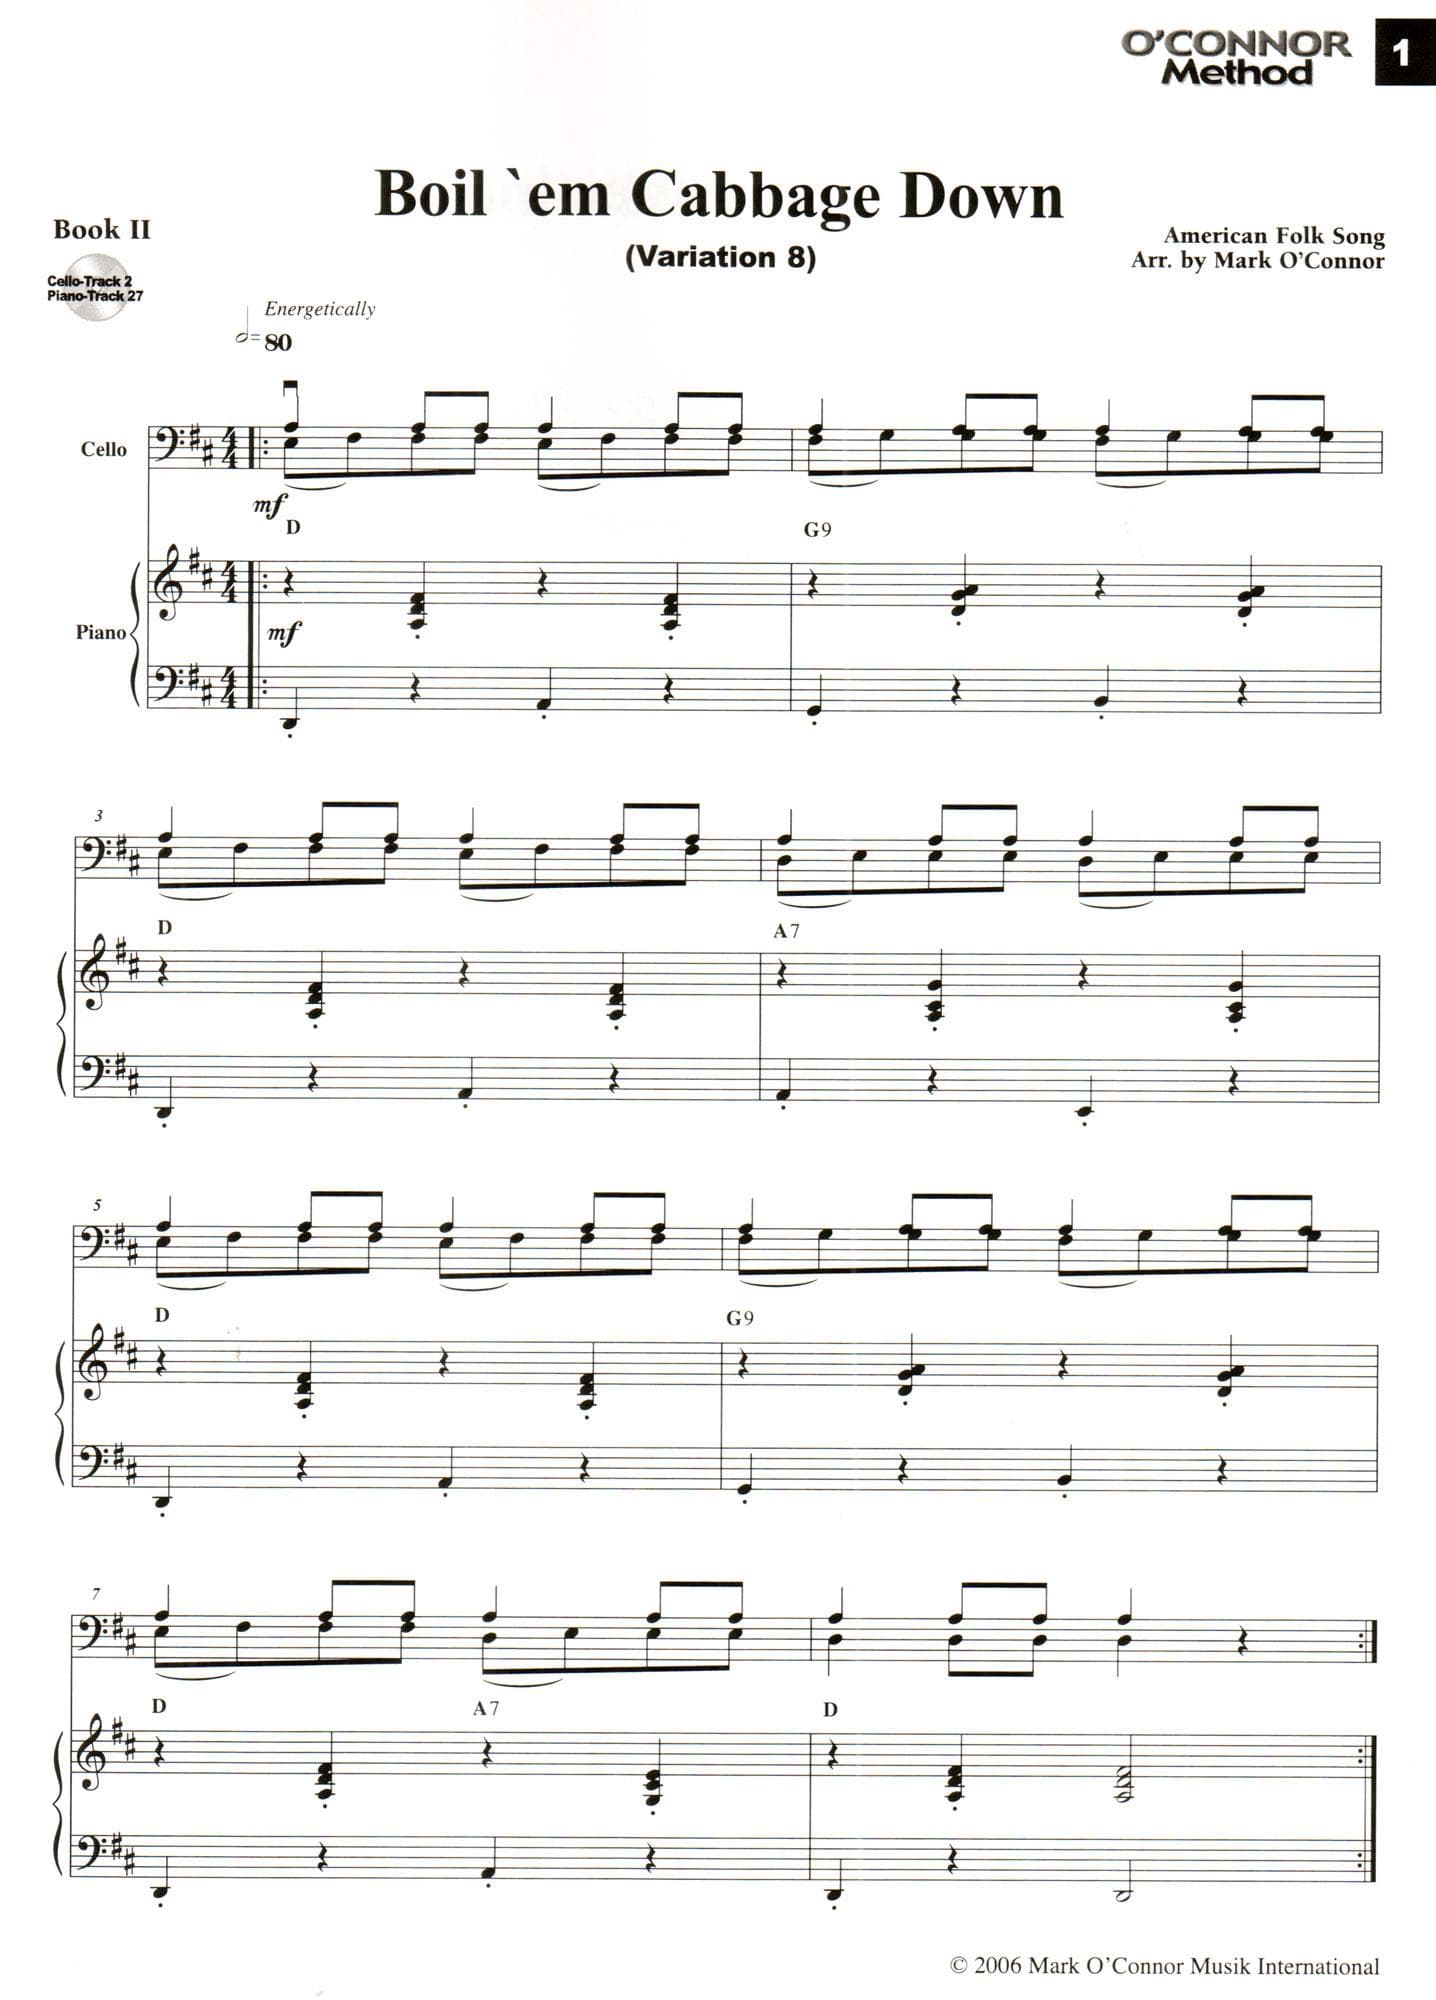 O'Connor Cello Method Book II - Piano Accompaniment